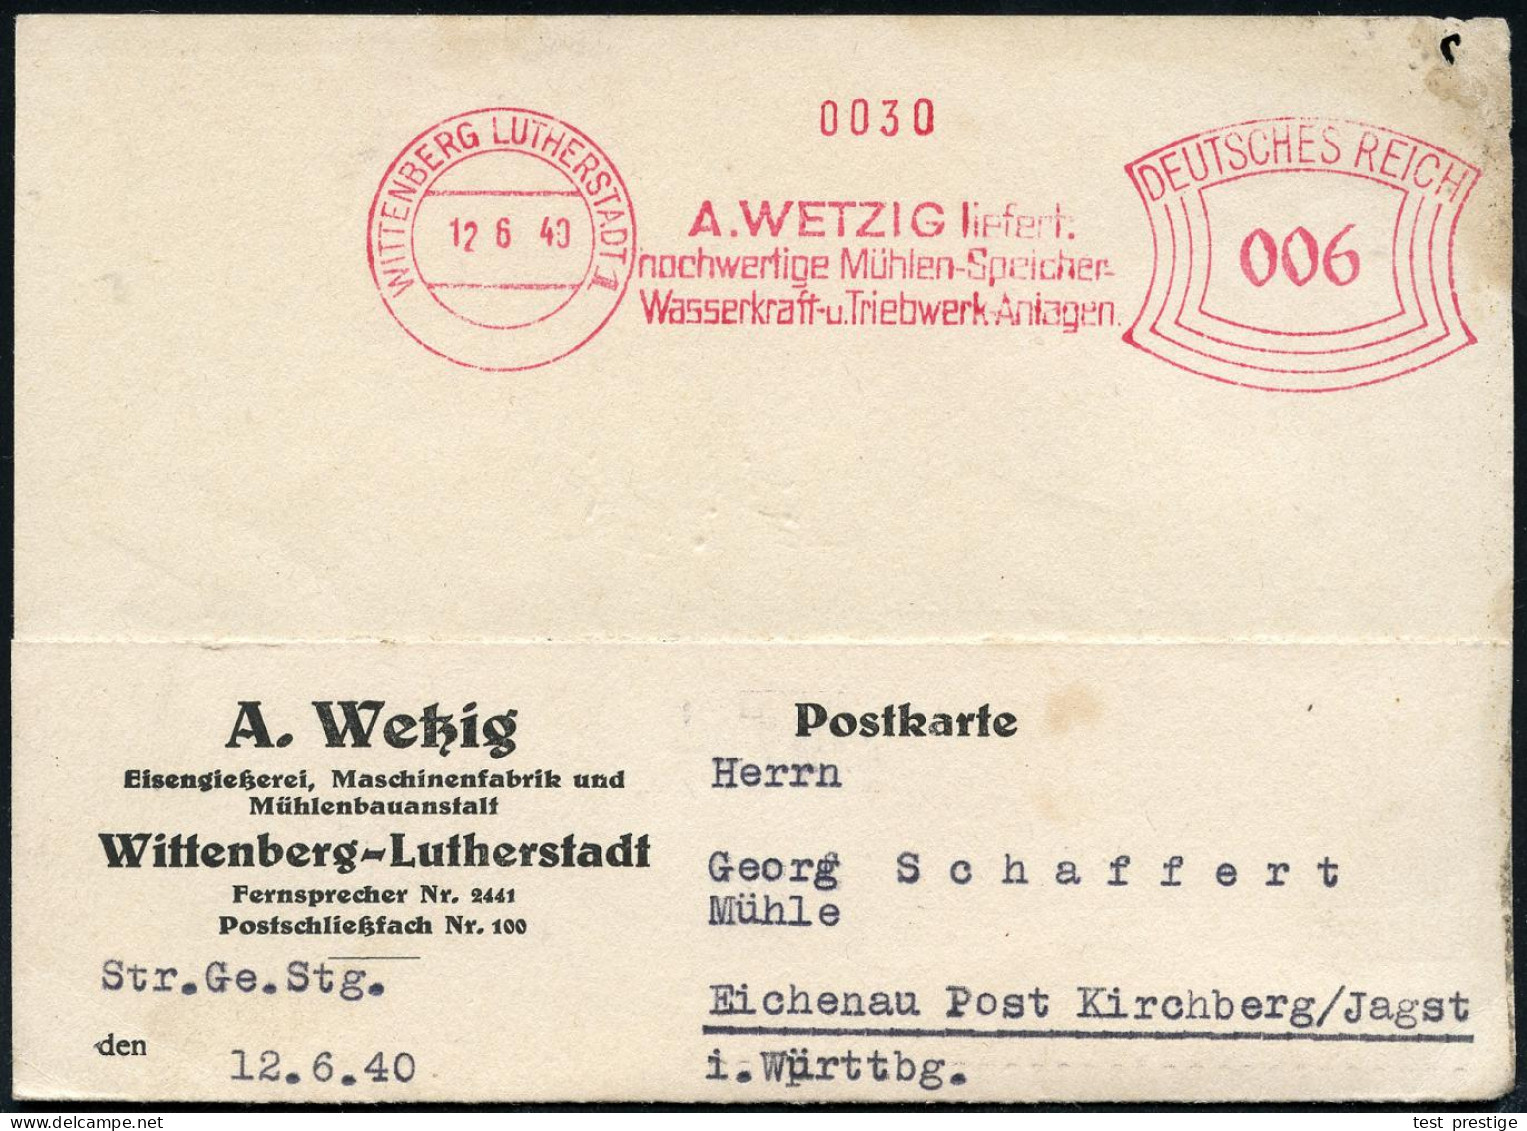 WITTENBERG  L U T H E R S T A D T / A.WETZIG Liefert/ ..Mühlen-Speicher/ Wasserkraft-u.Triebwerk-Anlagen 1940 (12.6.) Se - Cristianismo